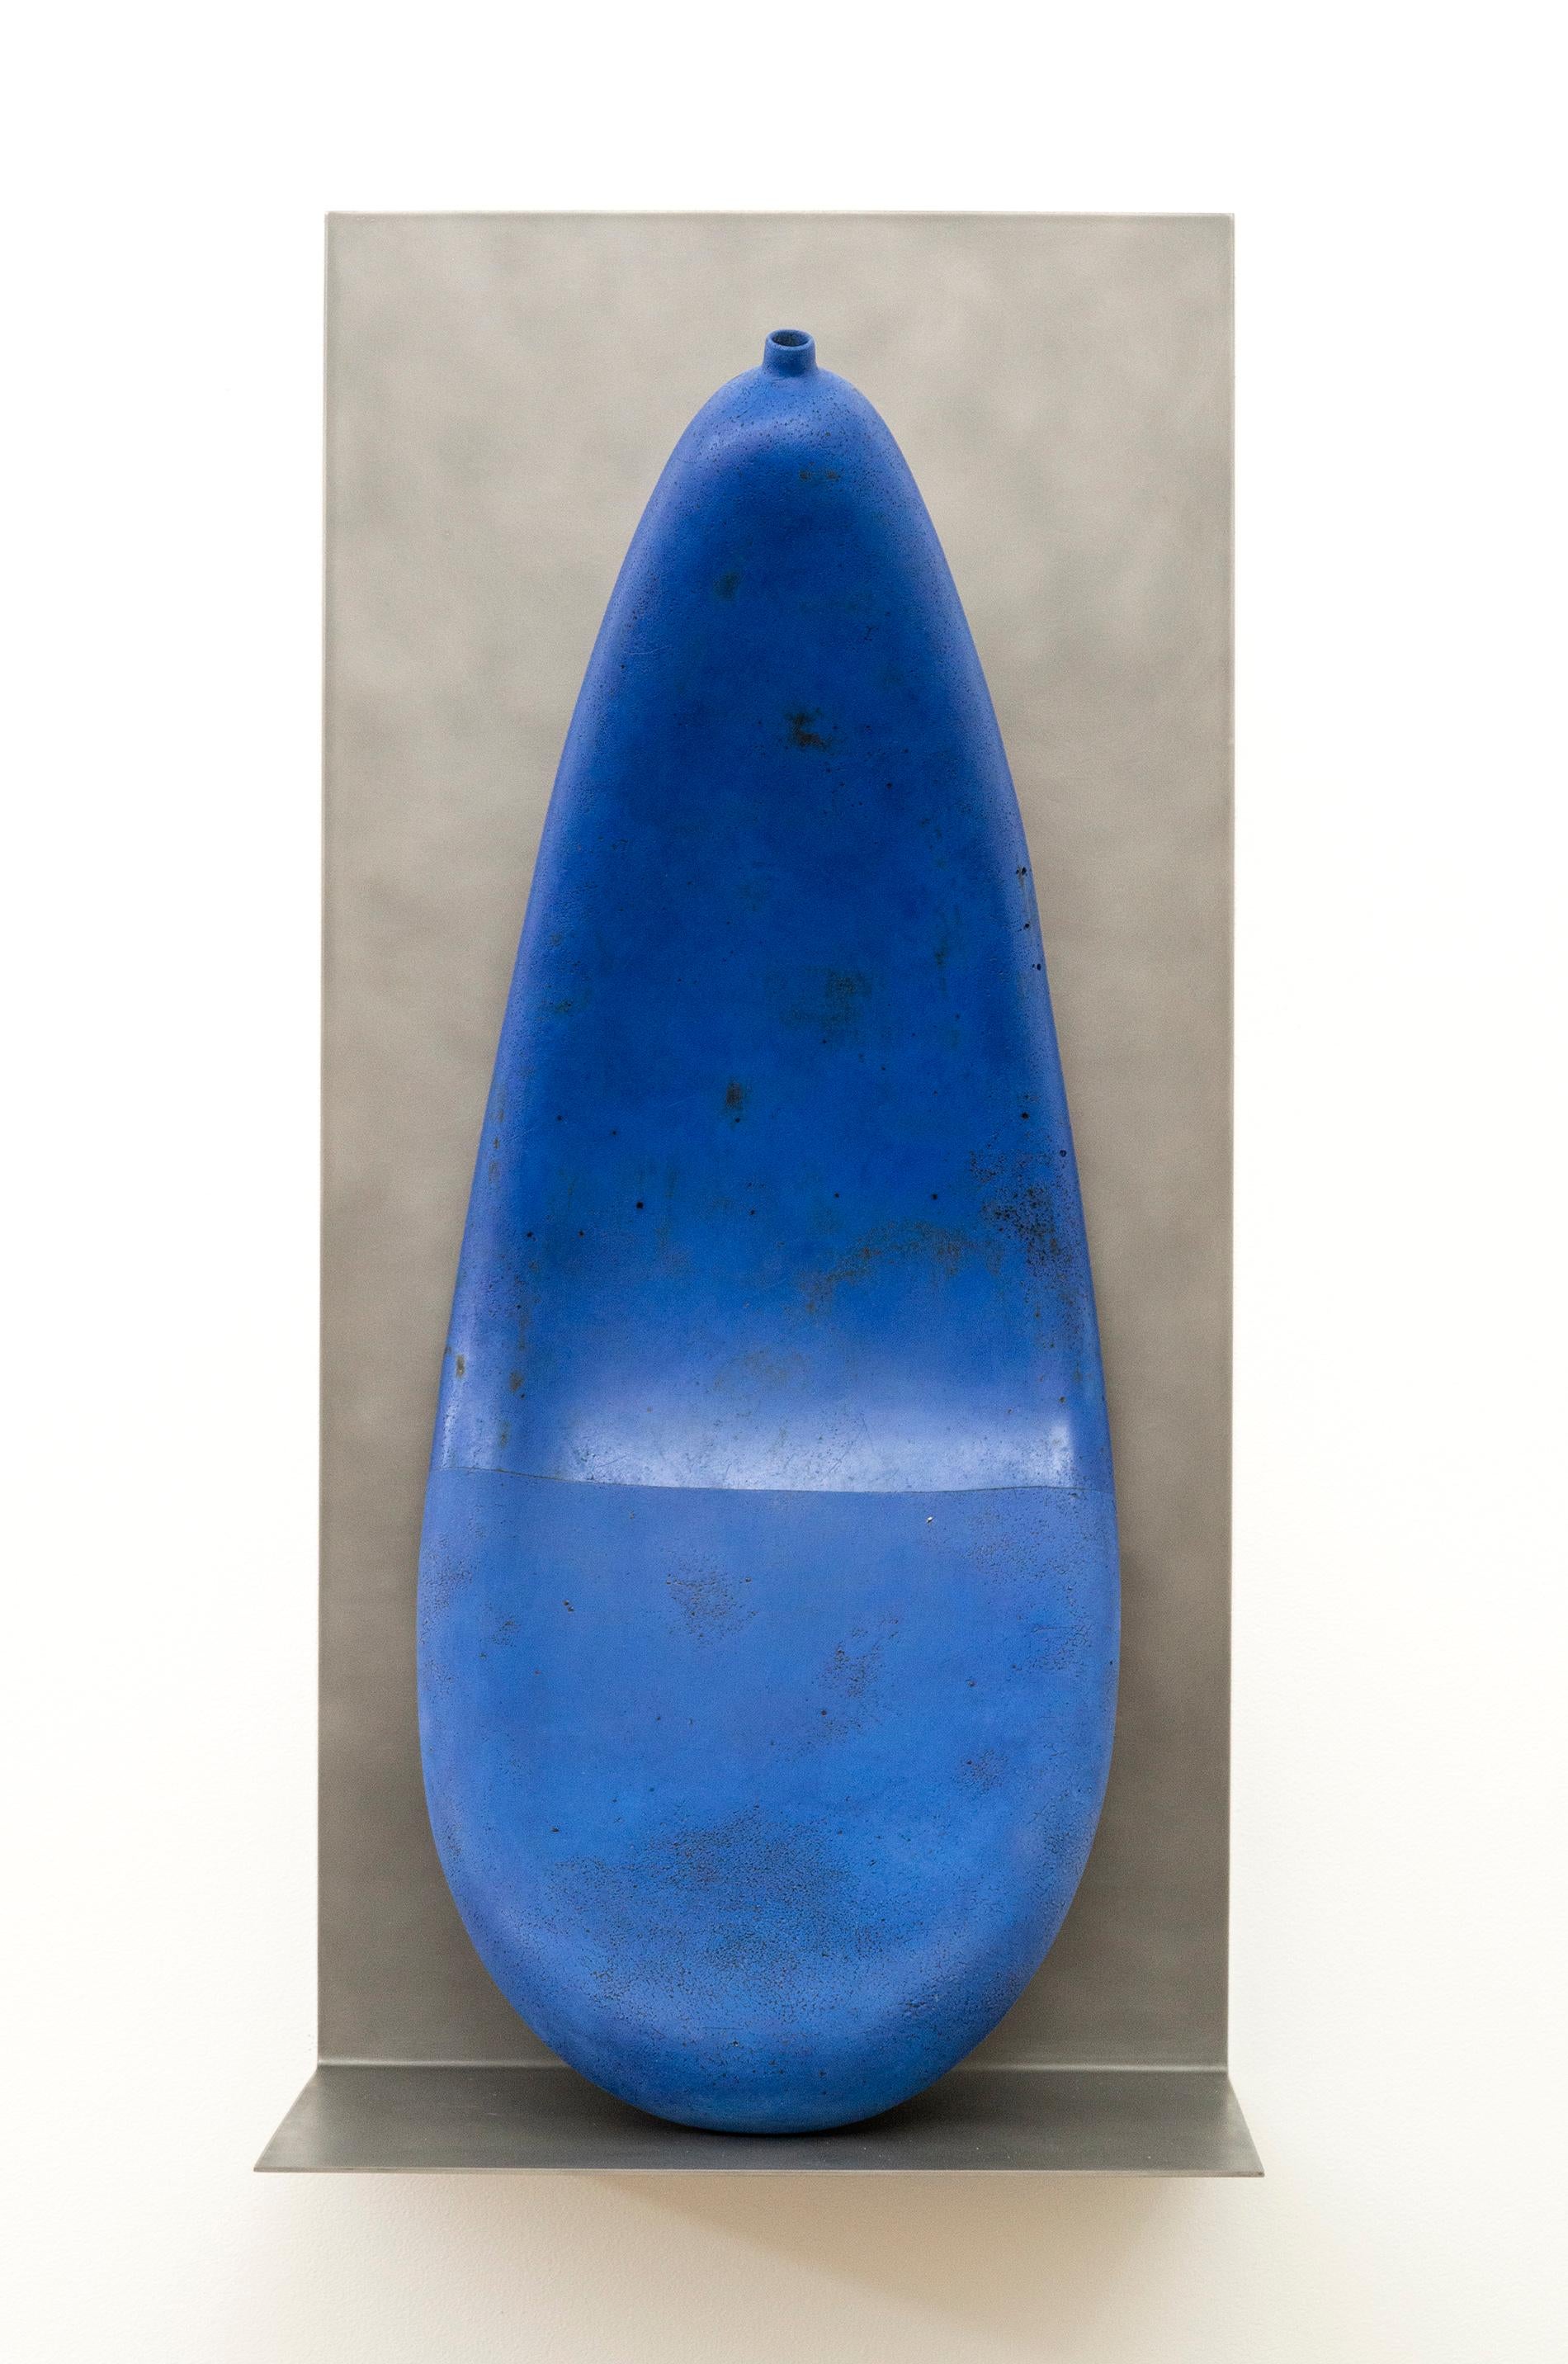 Diese faszinierende große blaue Tonarbeit des kanadischen Künstlers Steven Heinemann überbrückt die Kluft zwischen Skulptur und Keramik. Das tropfenförmige Gefäß wirkt entleert und sanft gekrümmt, als ob es das Stahlregal, auf dem es steht,